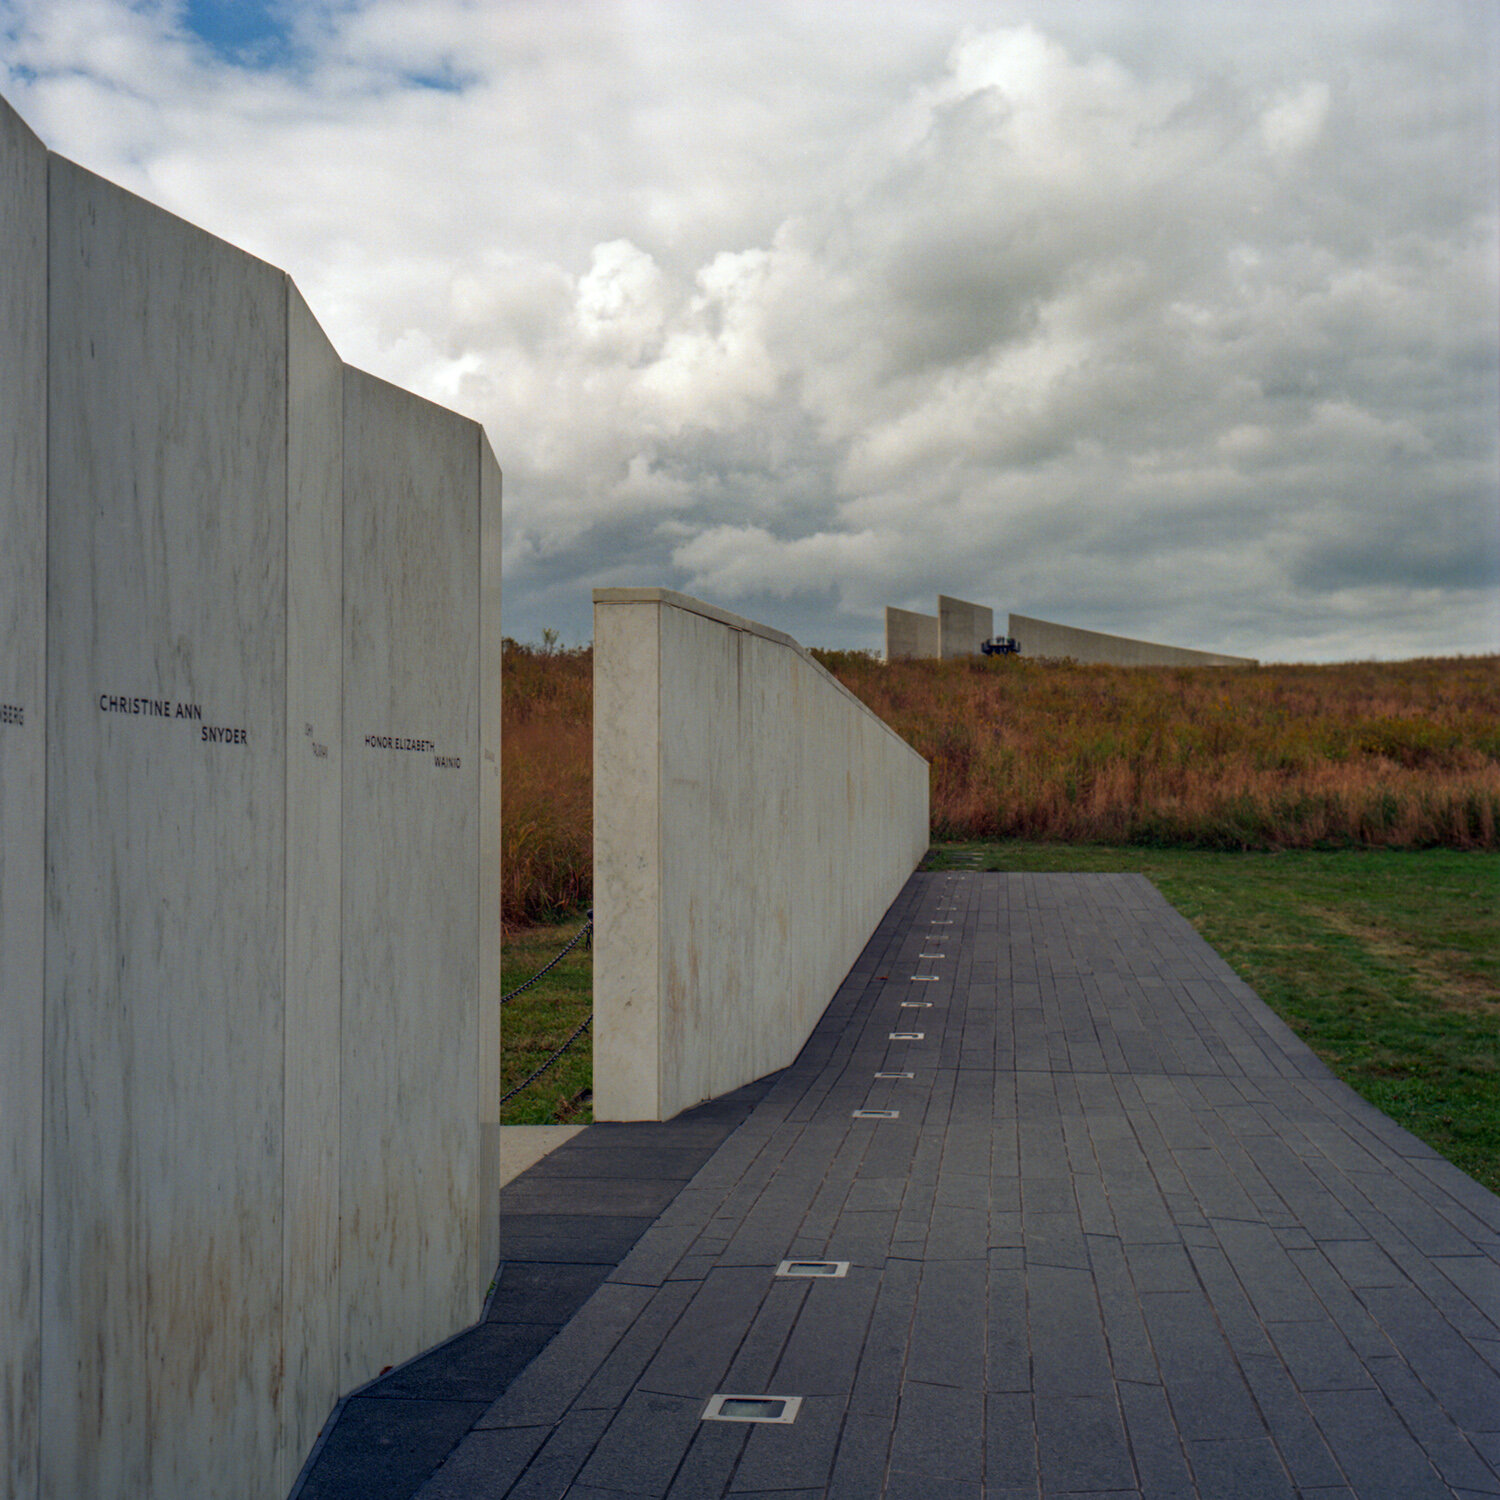  Flight 93 Memorial Shanksburg, PA 6x6 color film 